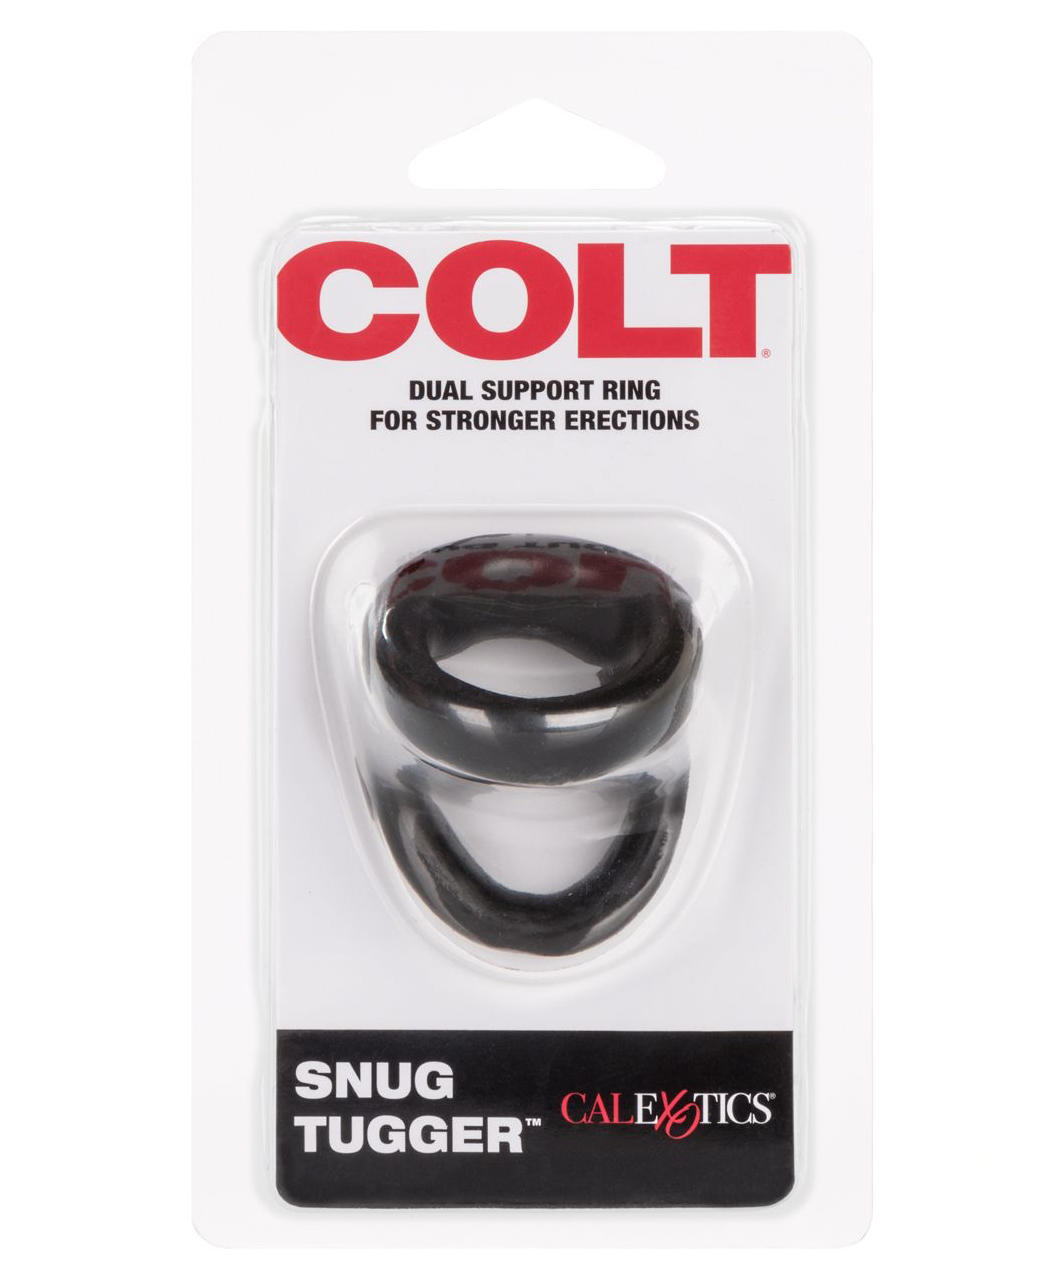 Colt Snug Tugger penio žiedas